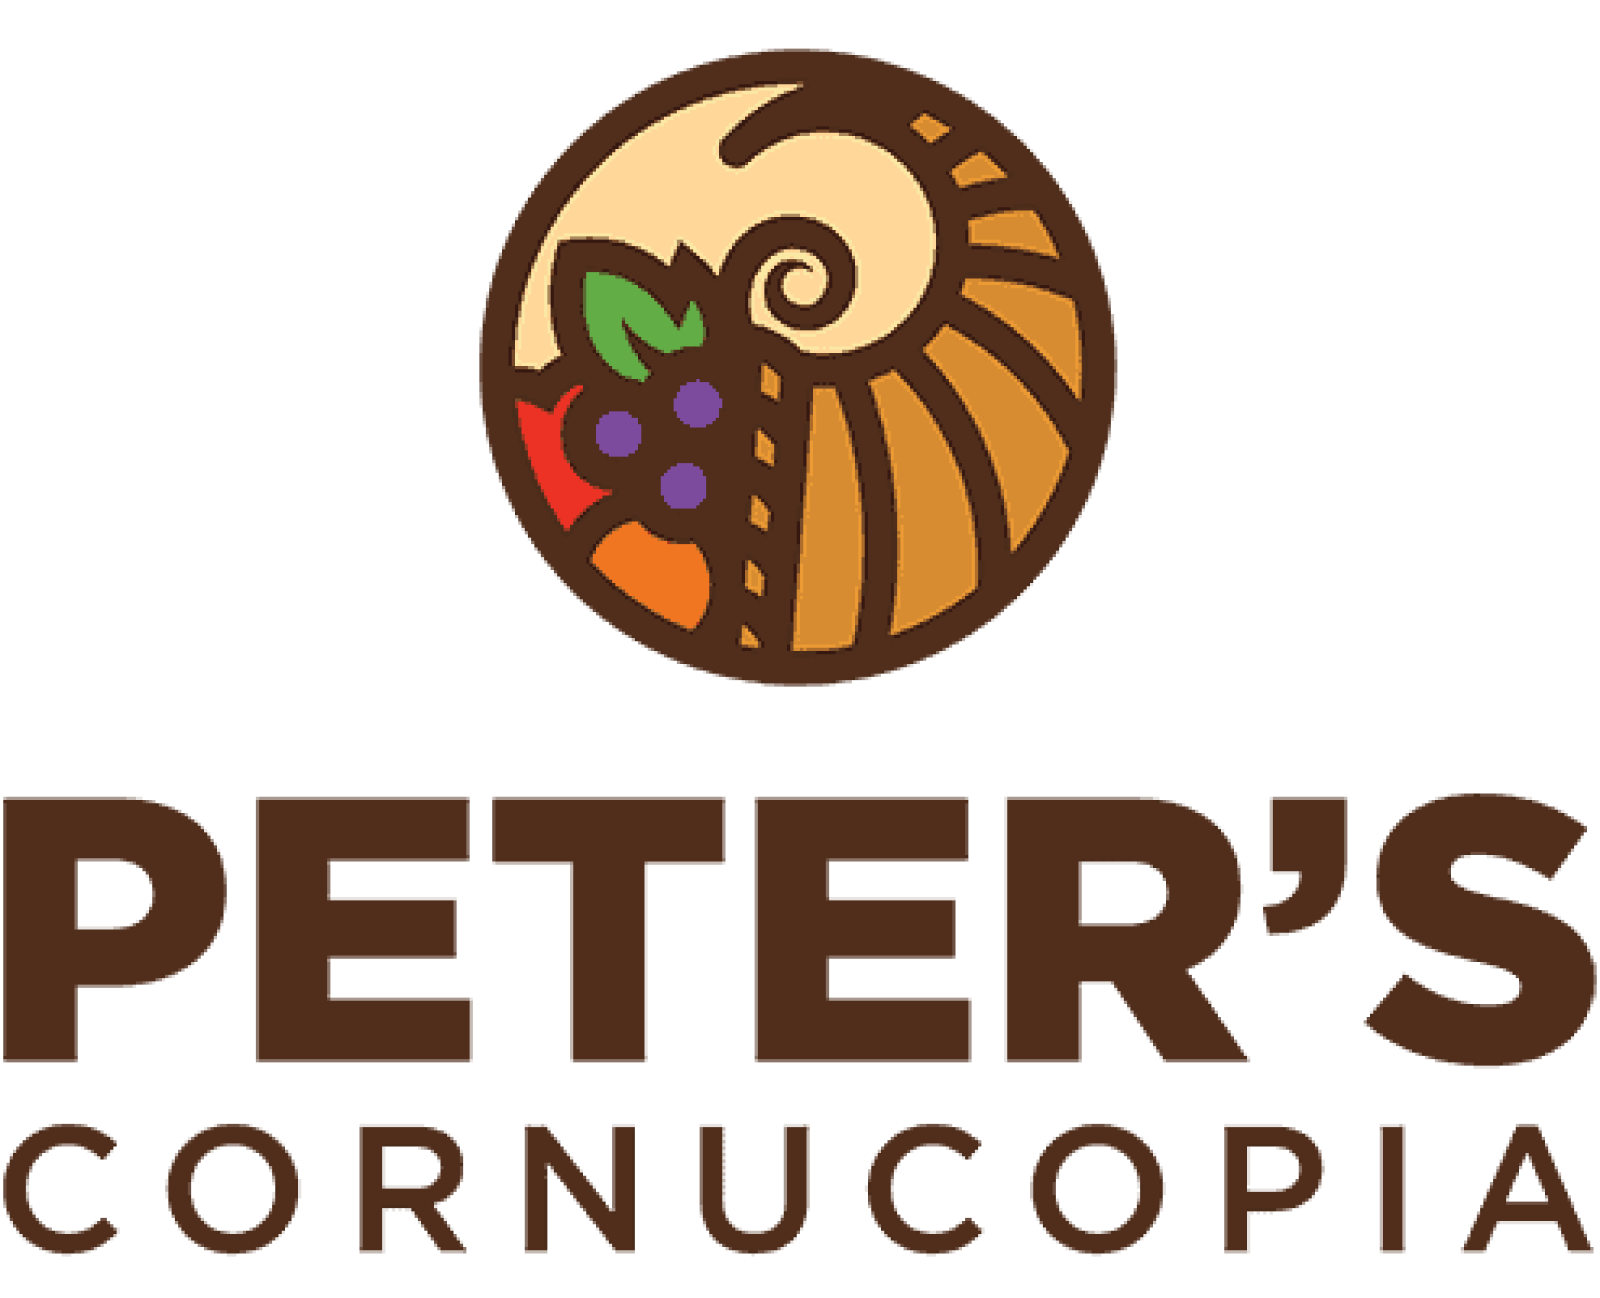 Peter's Cornucopia